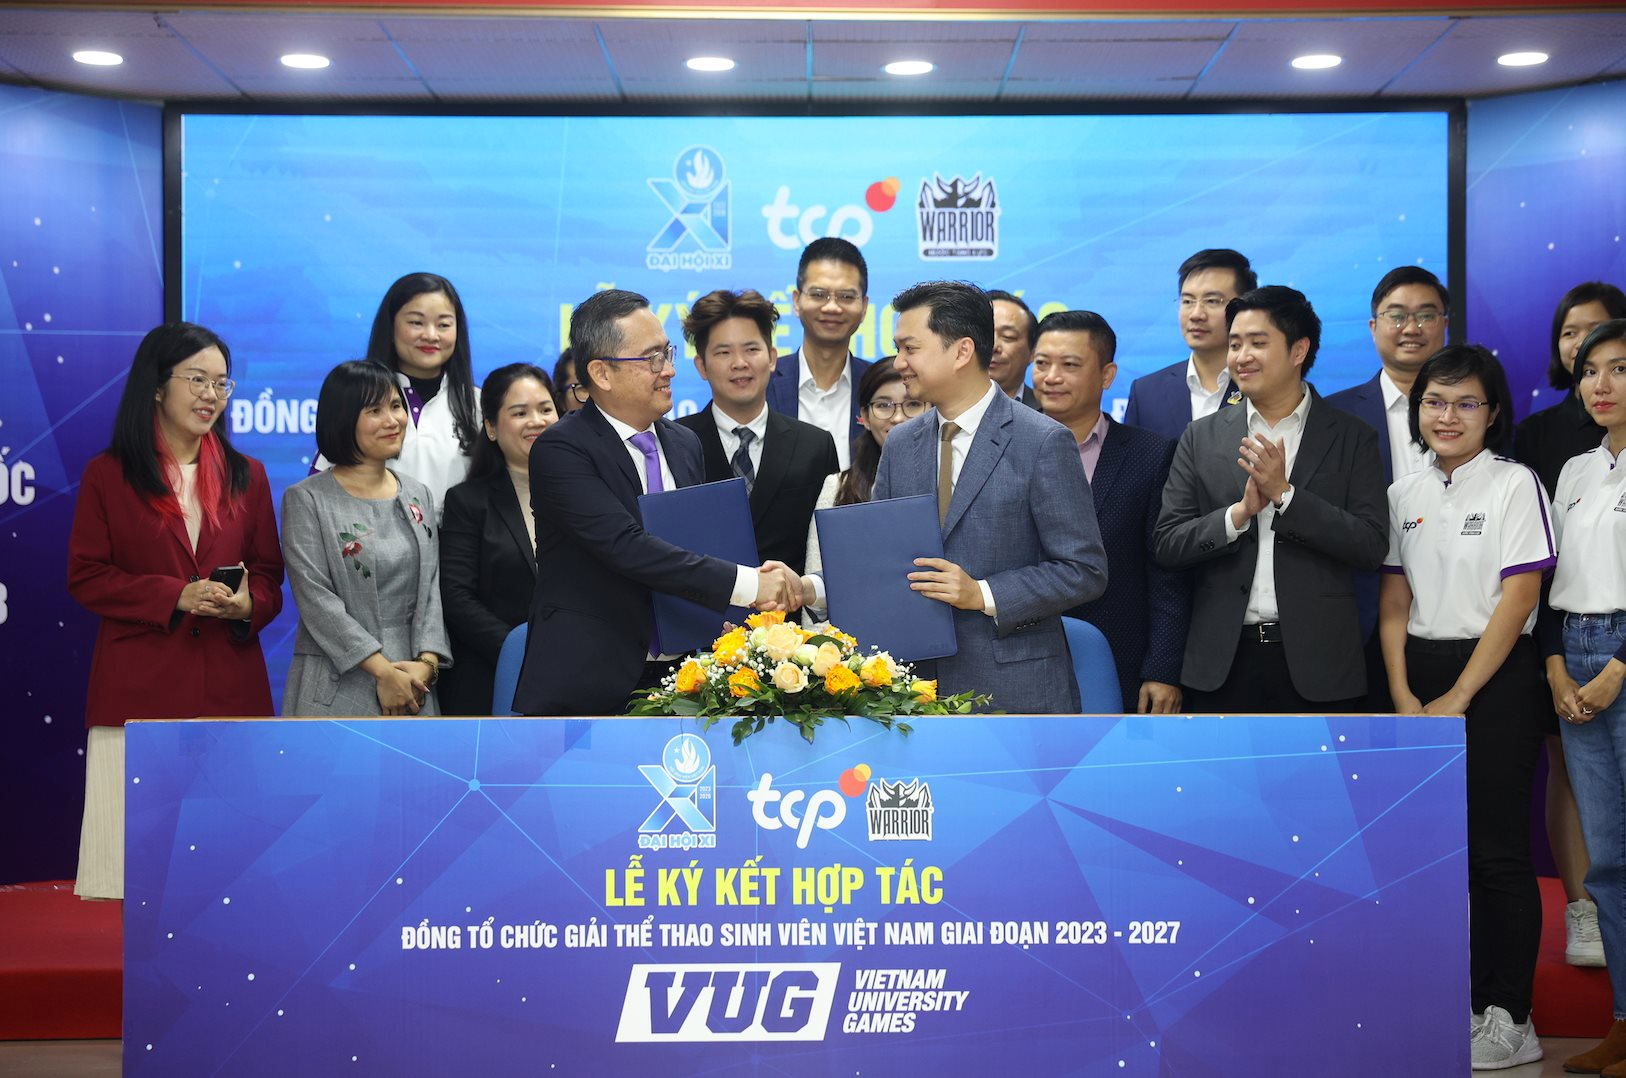 Giải thể thao VUG dành cho sinh viên Việt Nam sẽ có nhà tài trợ trong 5 năm học tới - Ảnh 1.